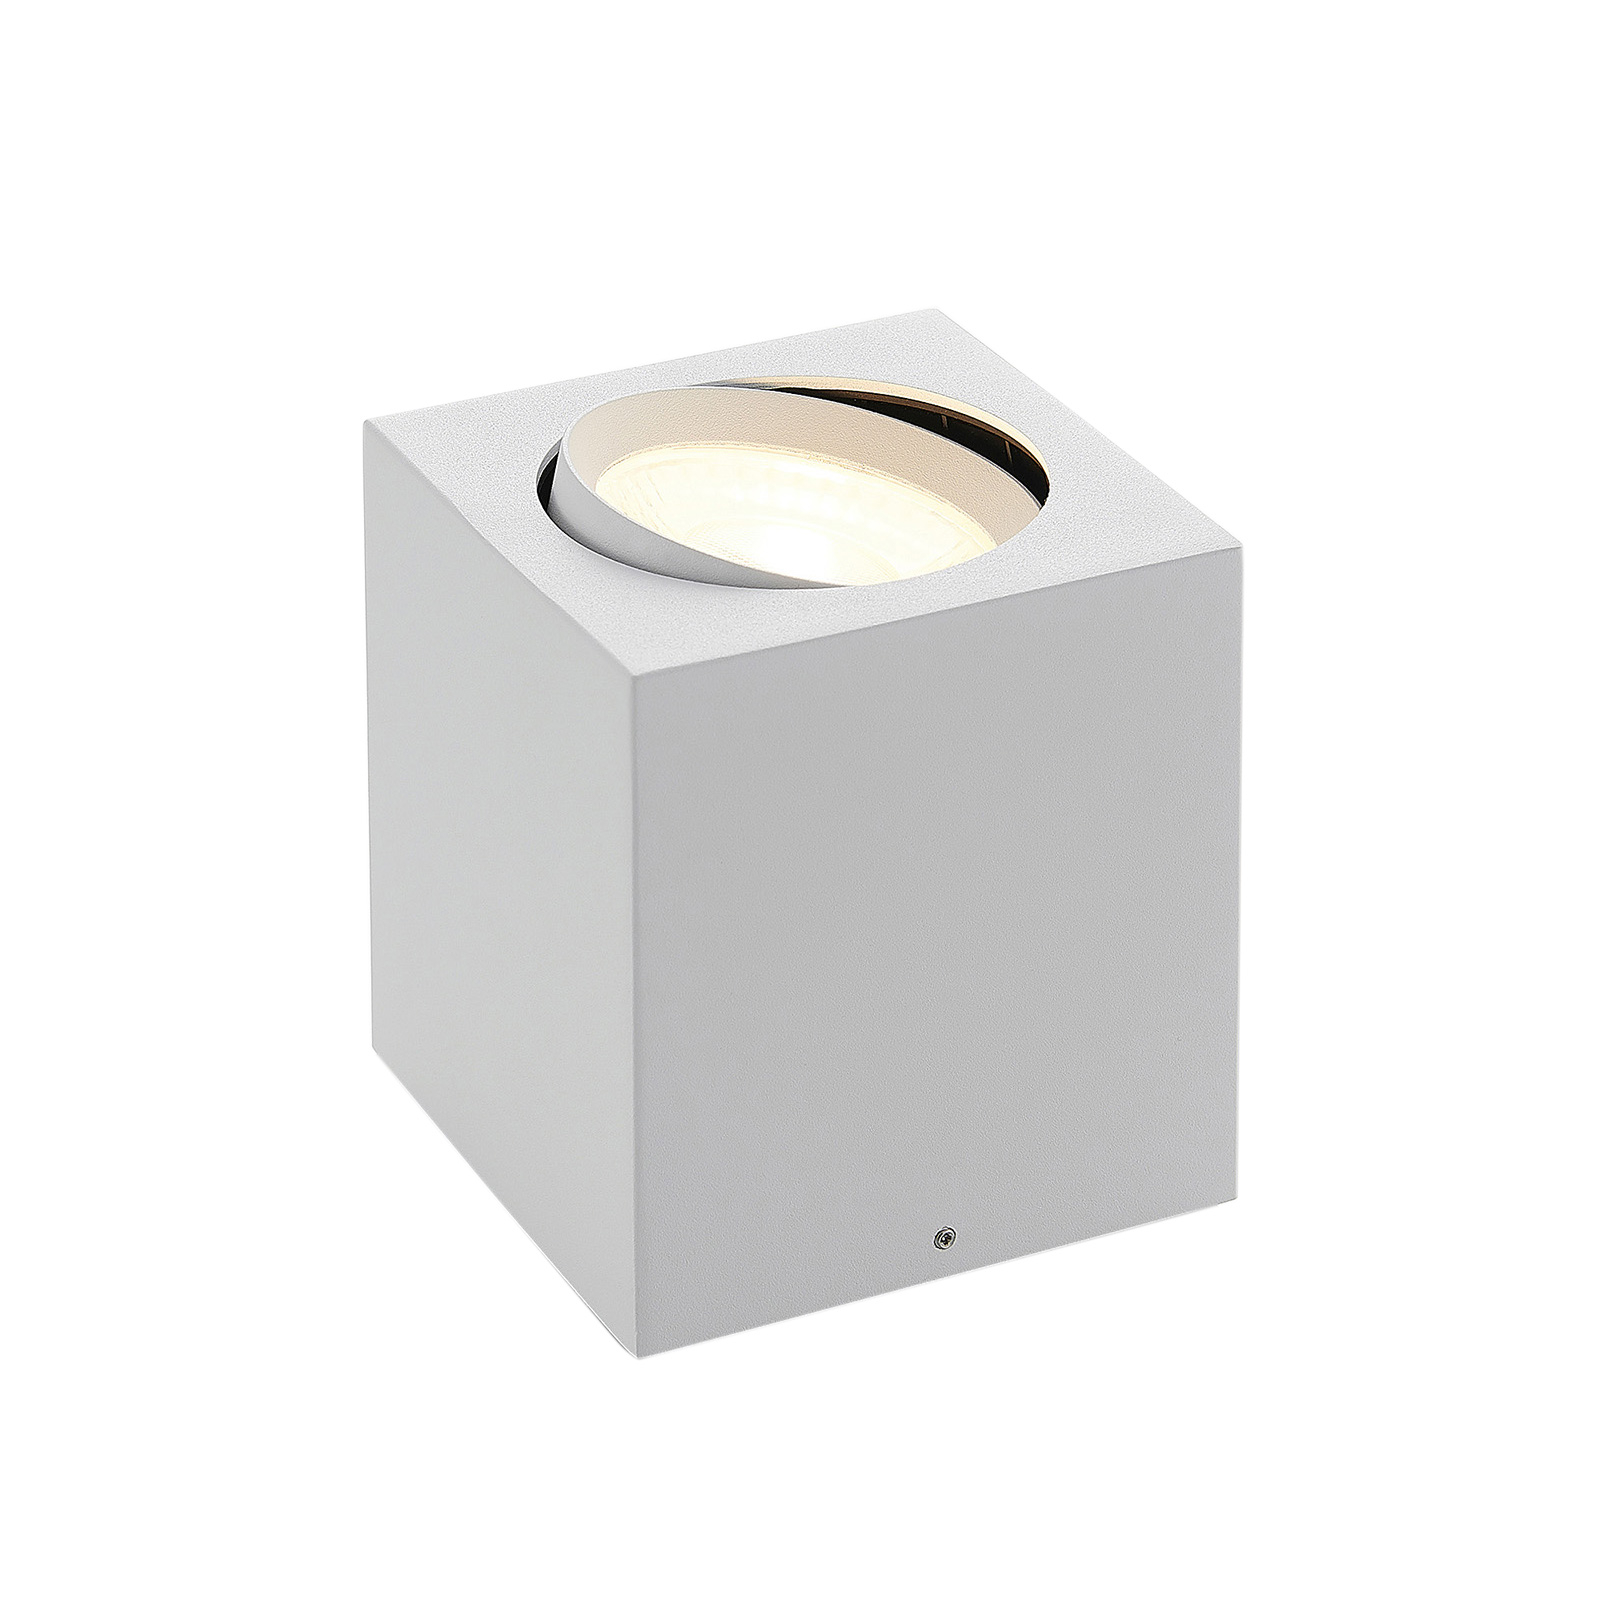 Arcchio Basir LED-kohdevalo valkoinen 16 W